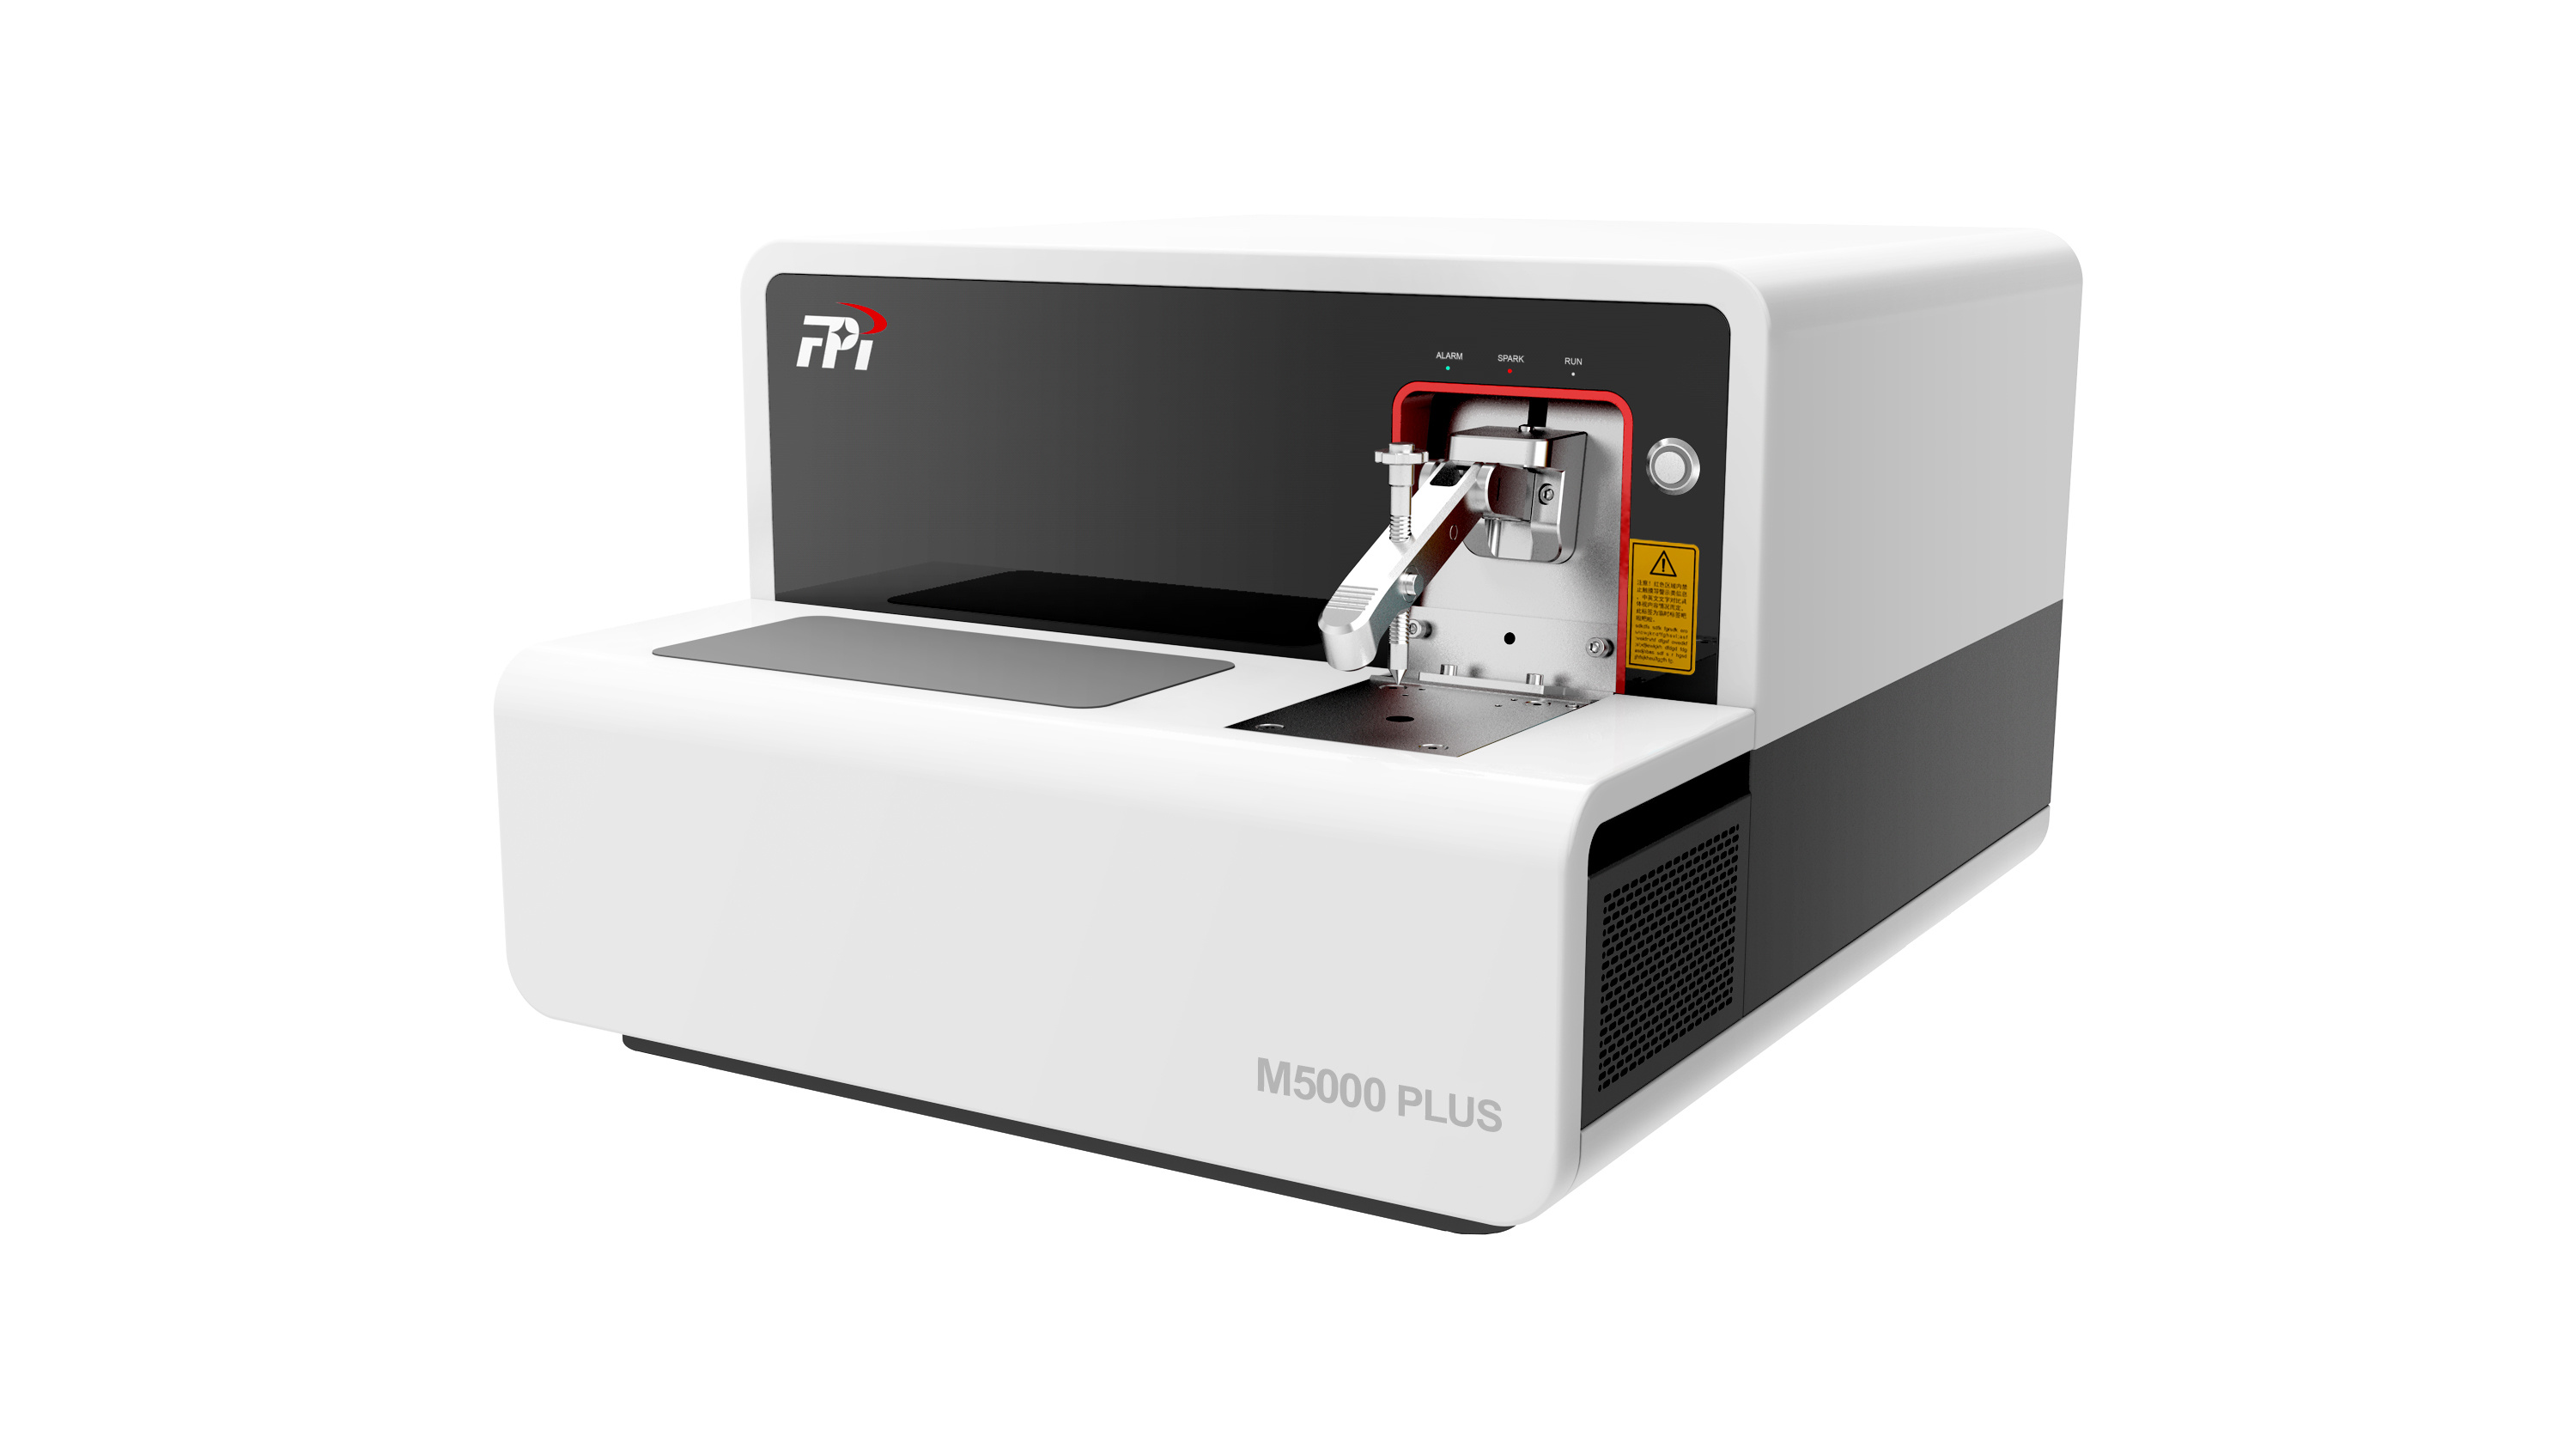 聚光科技 M5000 PLUS S 直读光谱仪